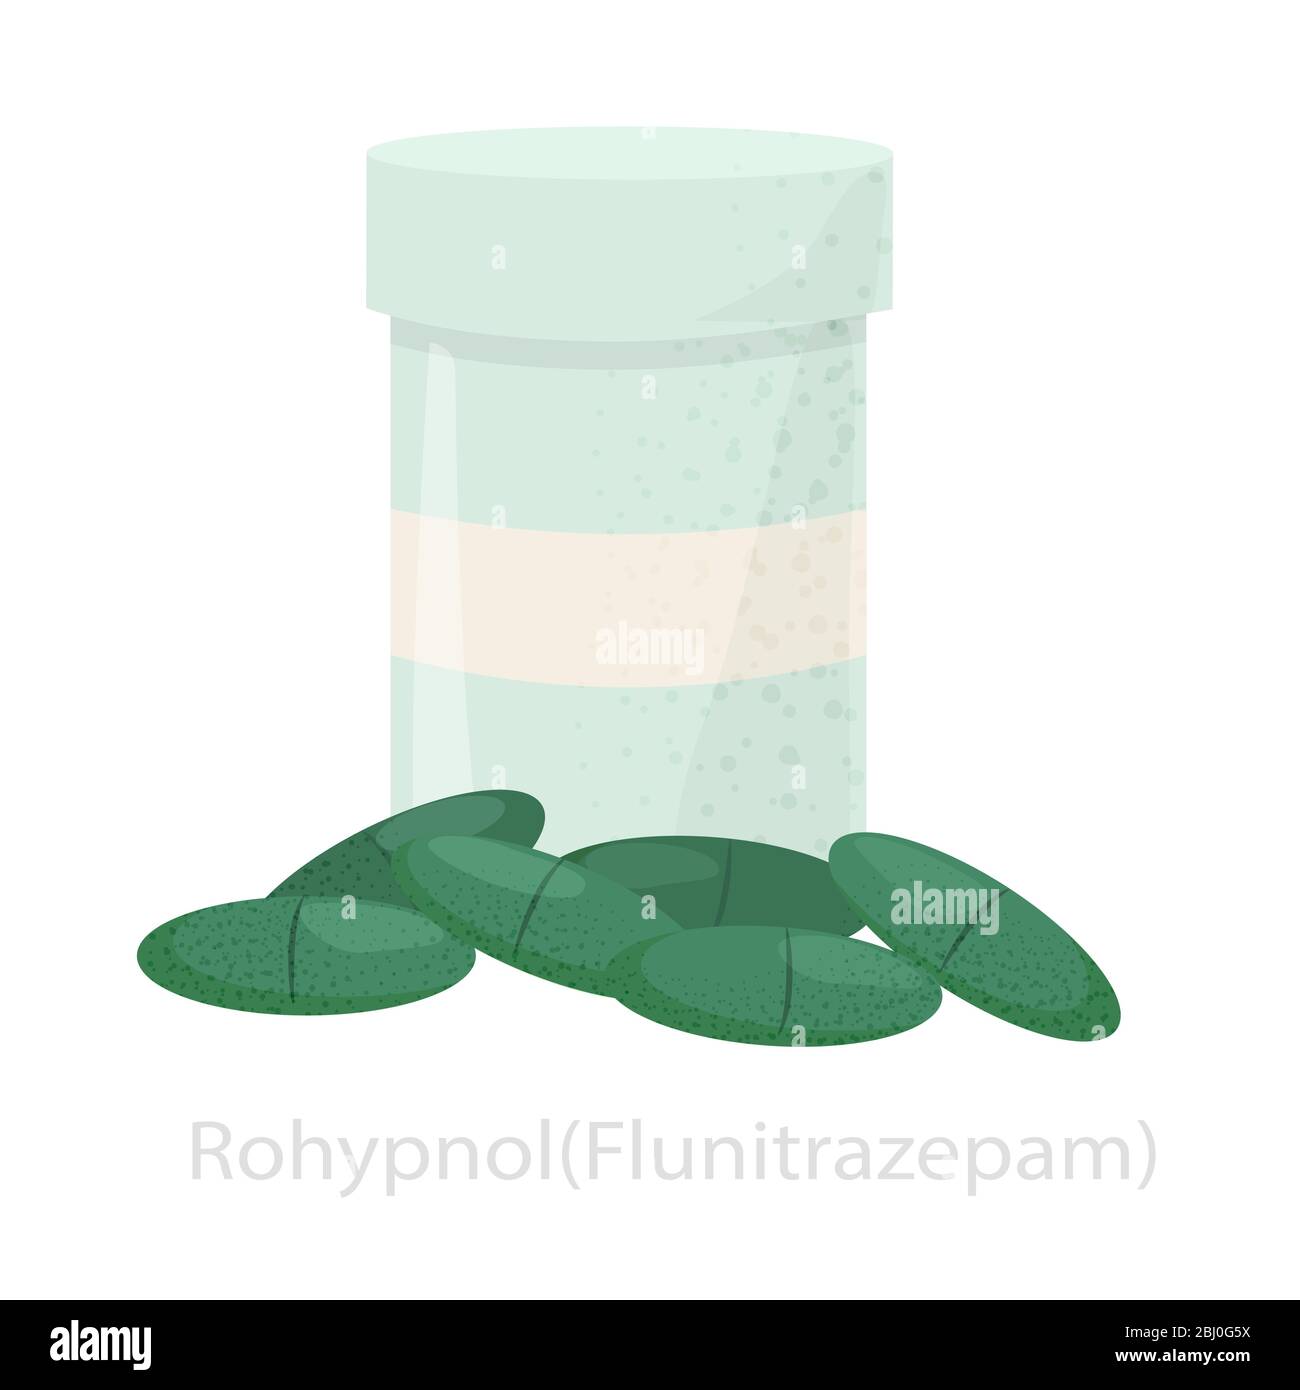 Rohypnol dans un pot et des pilules vertes. Le concept de flunitrozepam Illustration de Vecteur